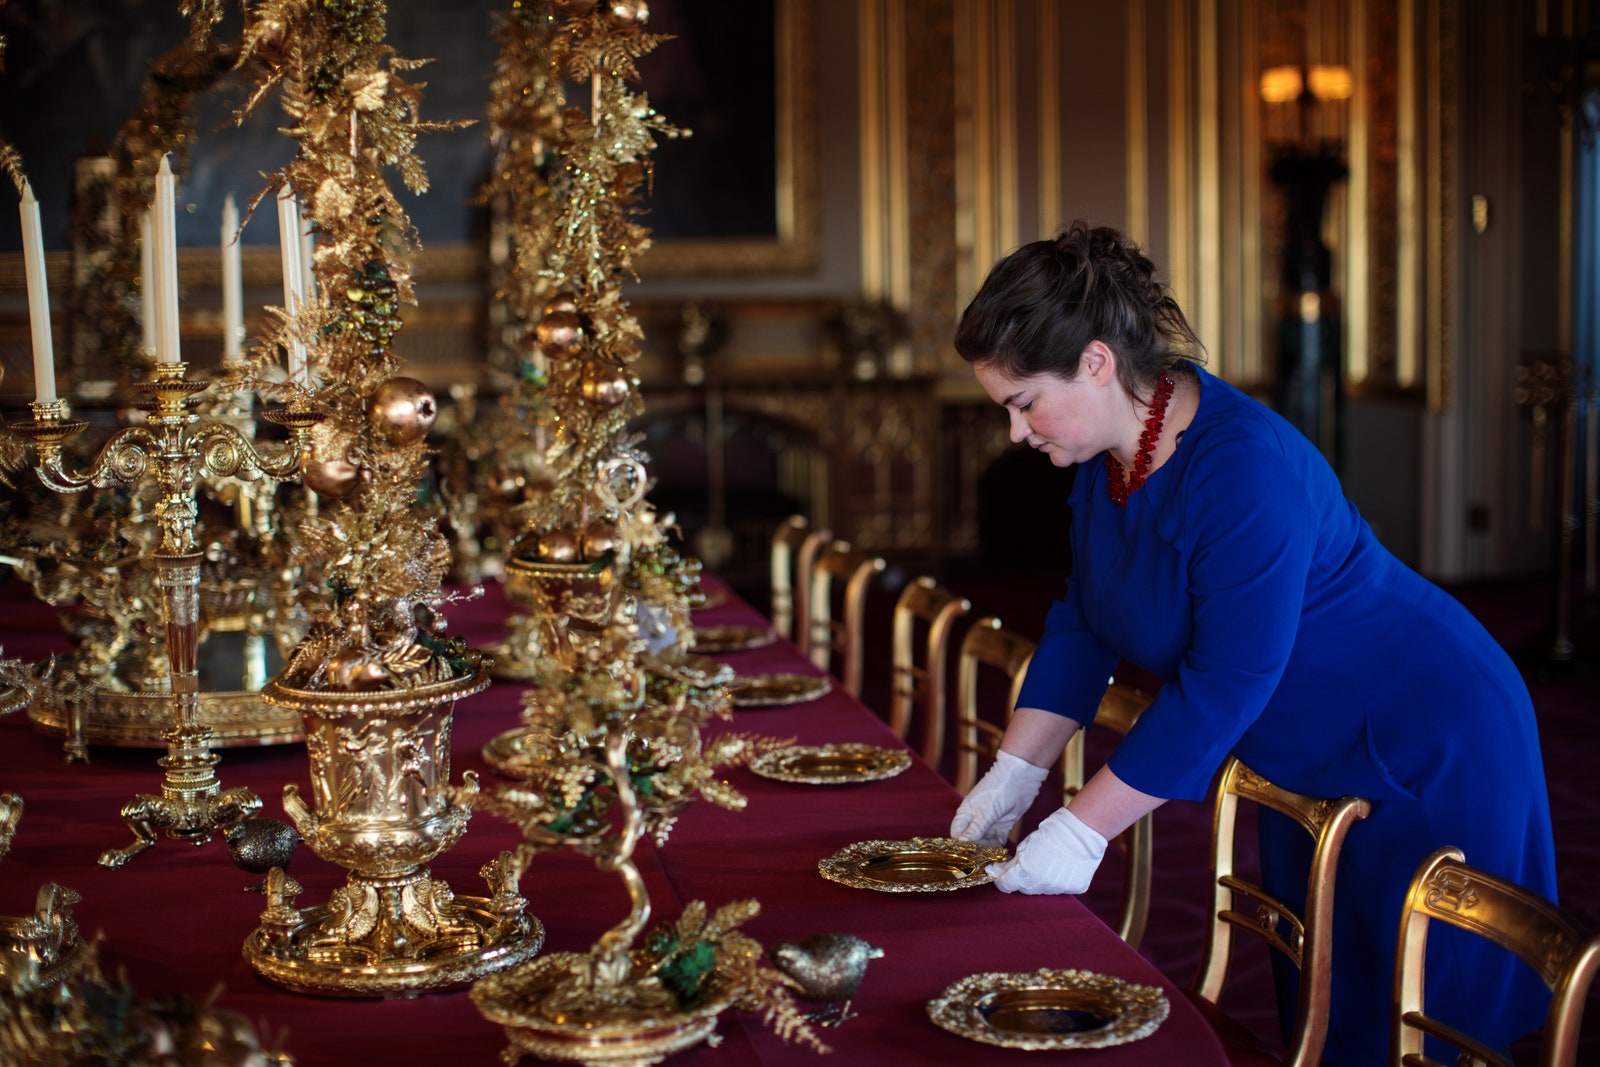 Вакансия в Букингемском дворце королева Елизавета II ищет помощника на кухню